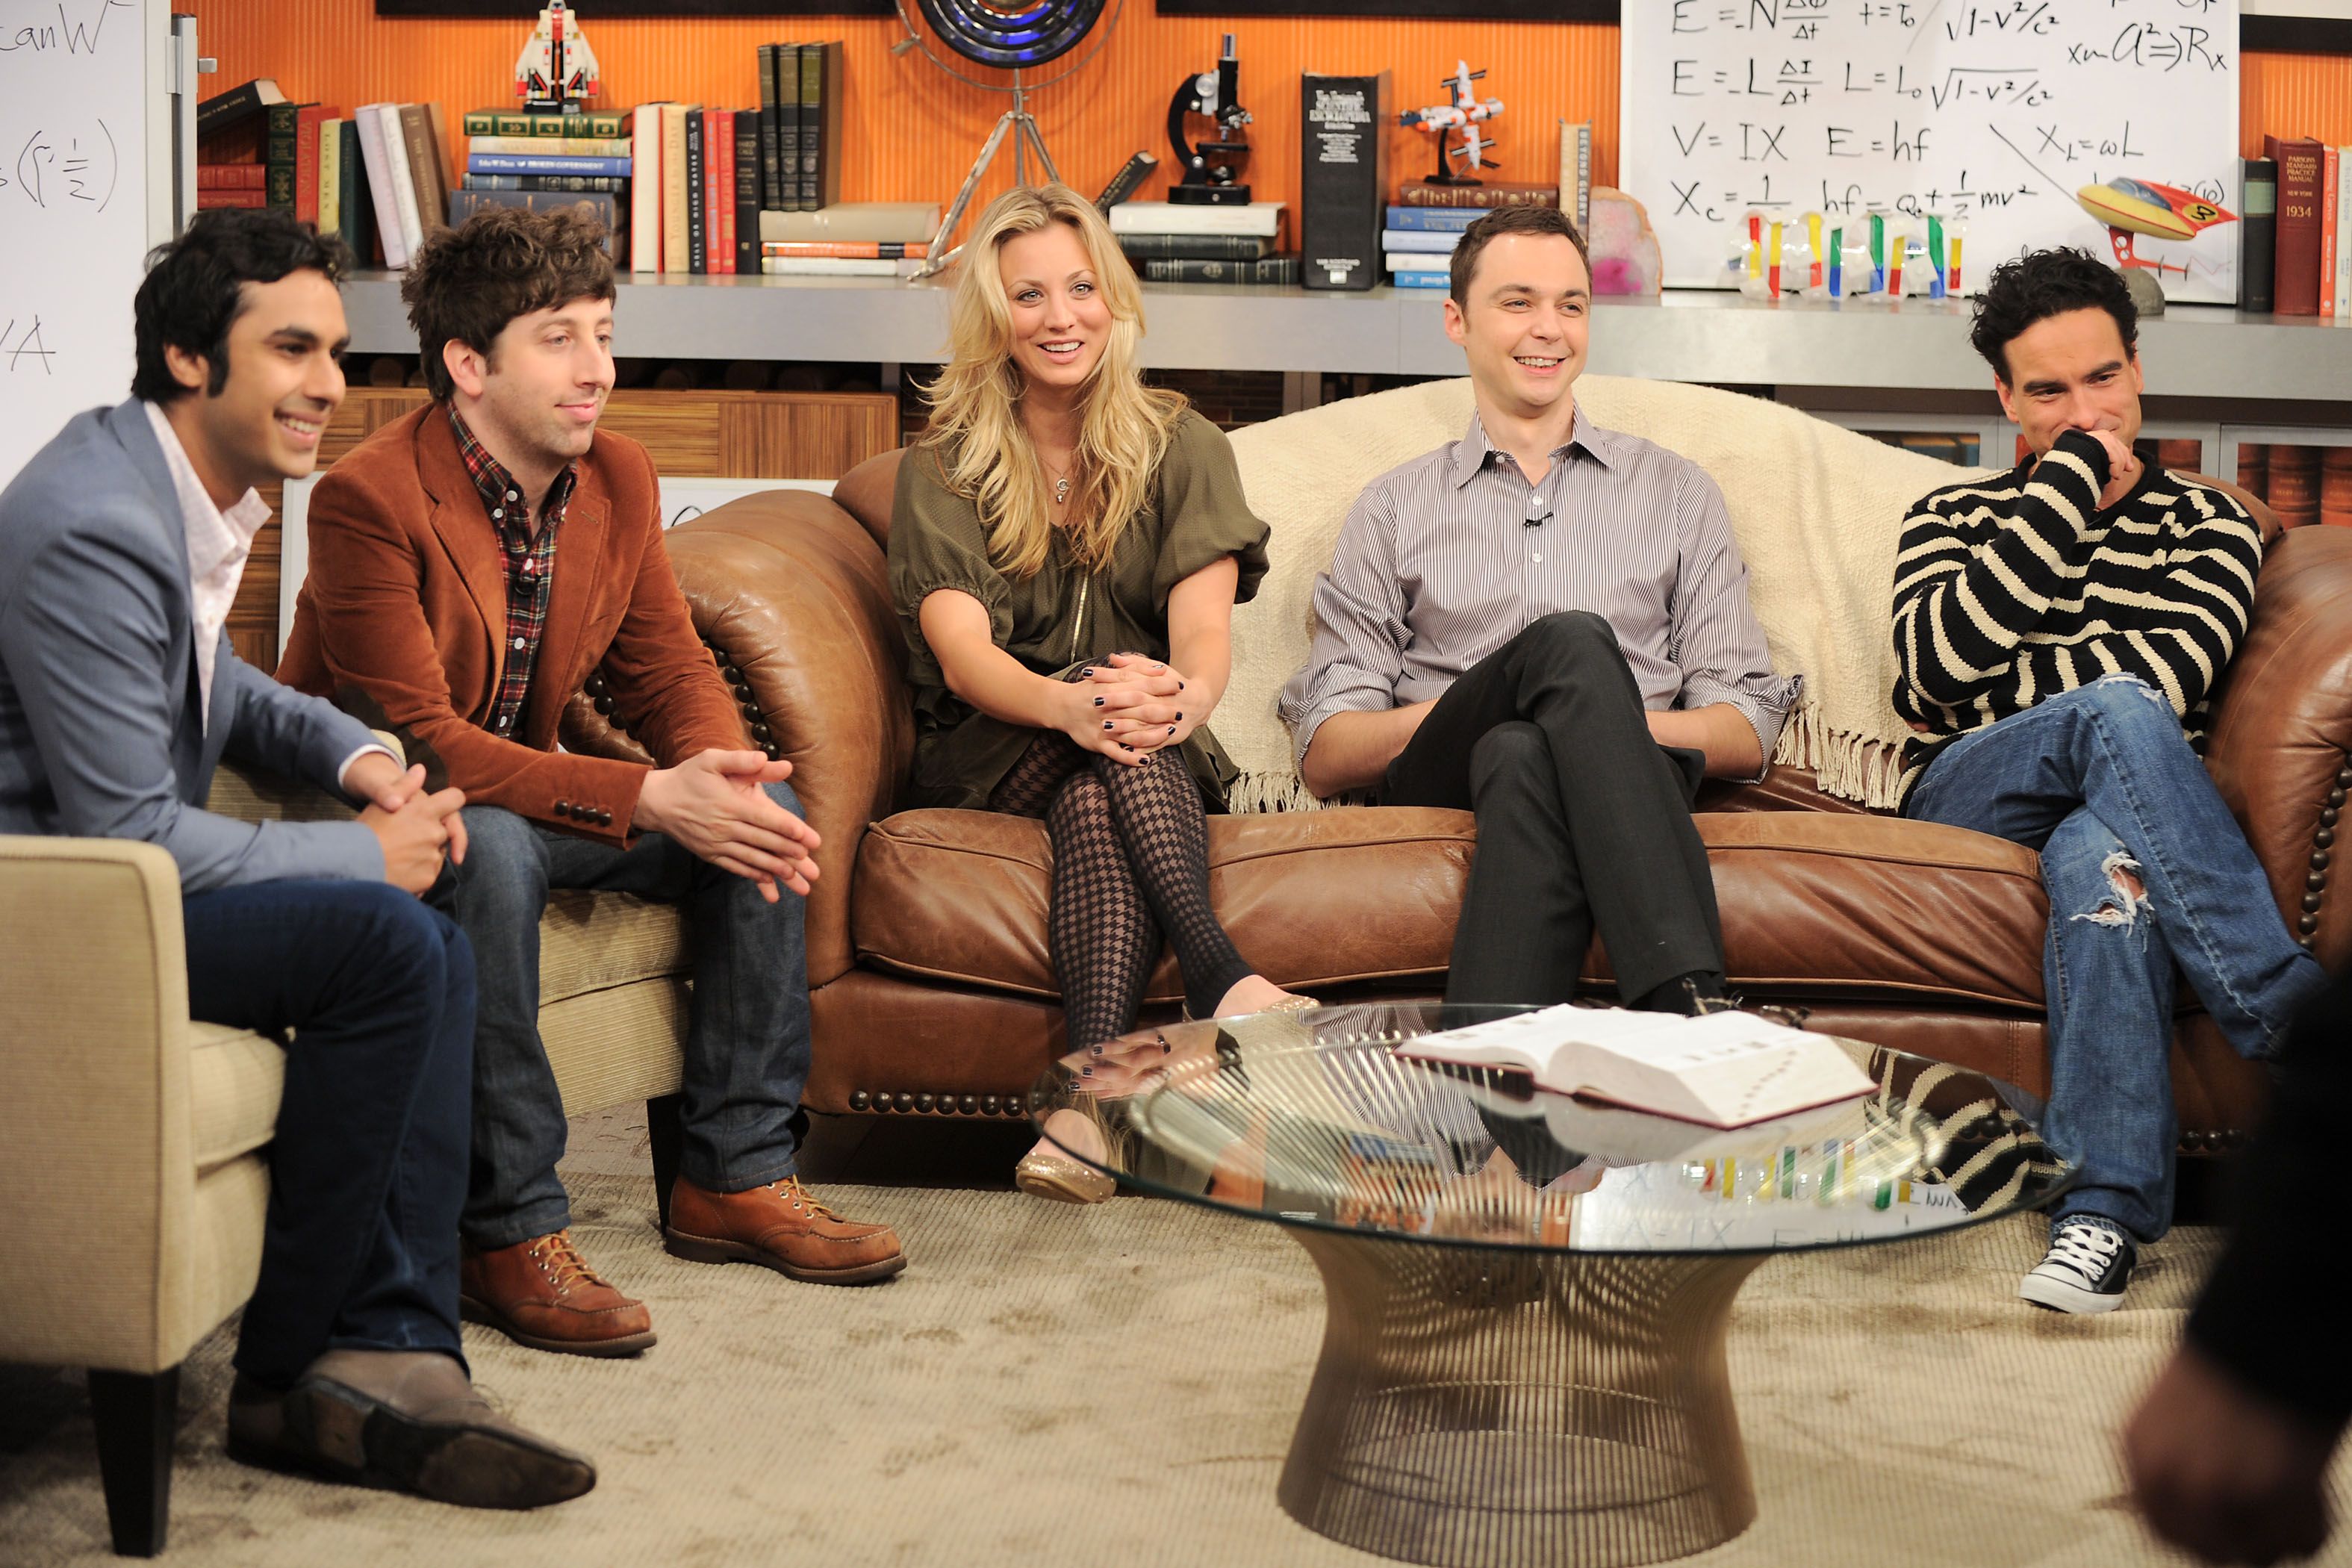 Um segundo spinoff de The Big Bang Theory quase aconteceu após o final, mas Chuck Lorre cancelou os planos na CBS